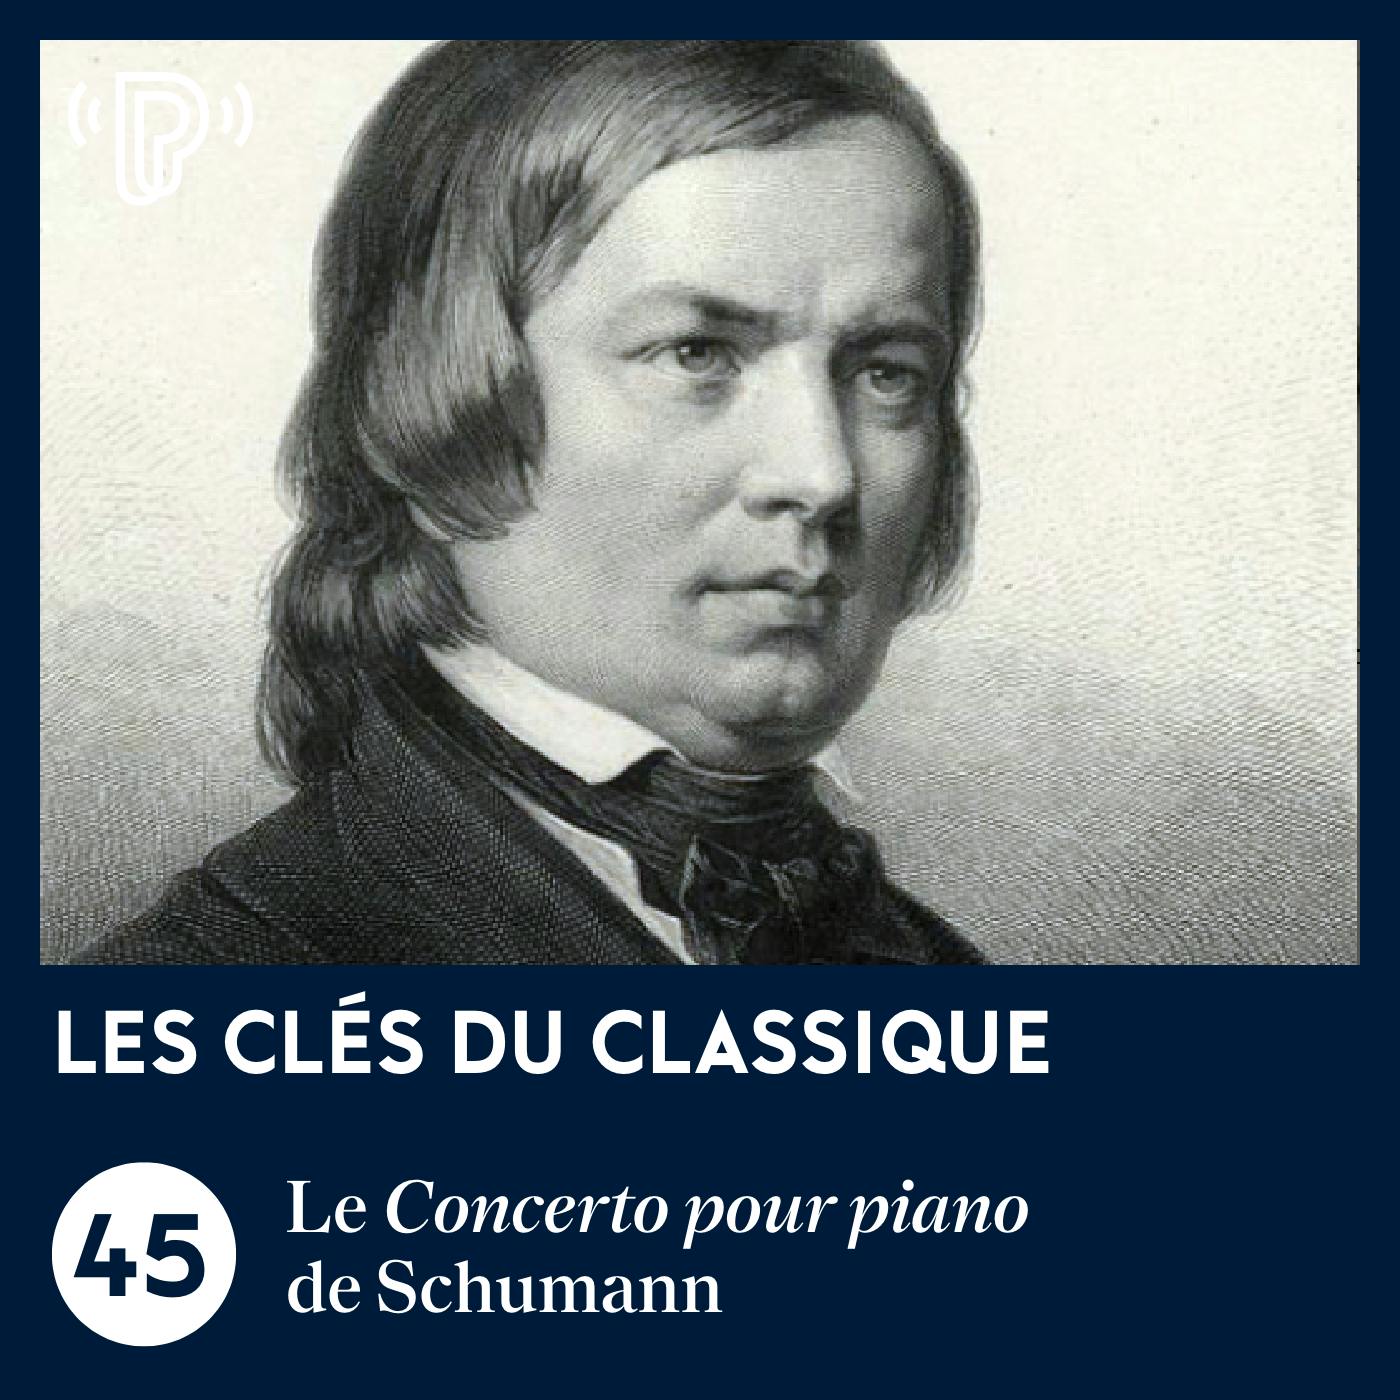 Le Concerto pour piano de Schumann  | Les Clés du classique #45